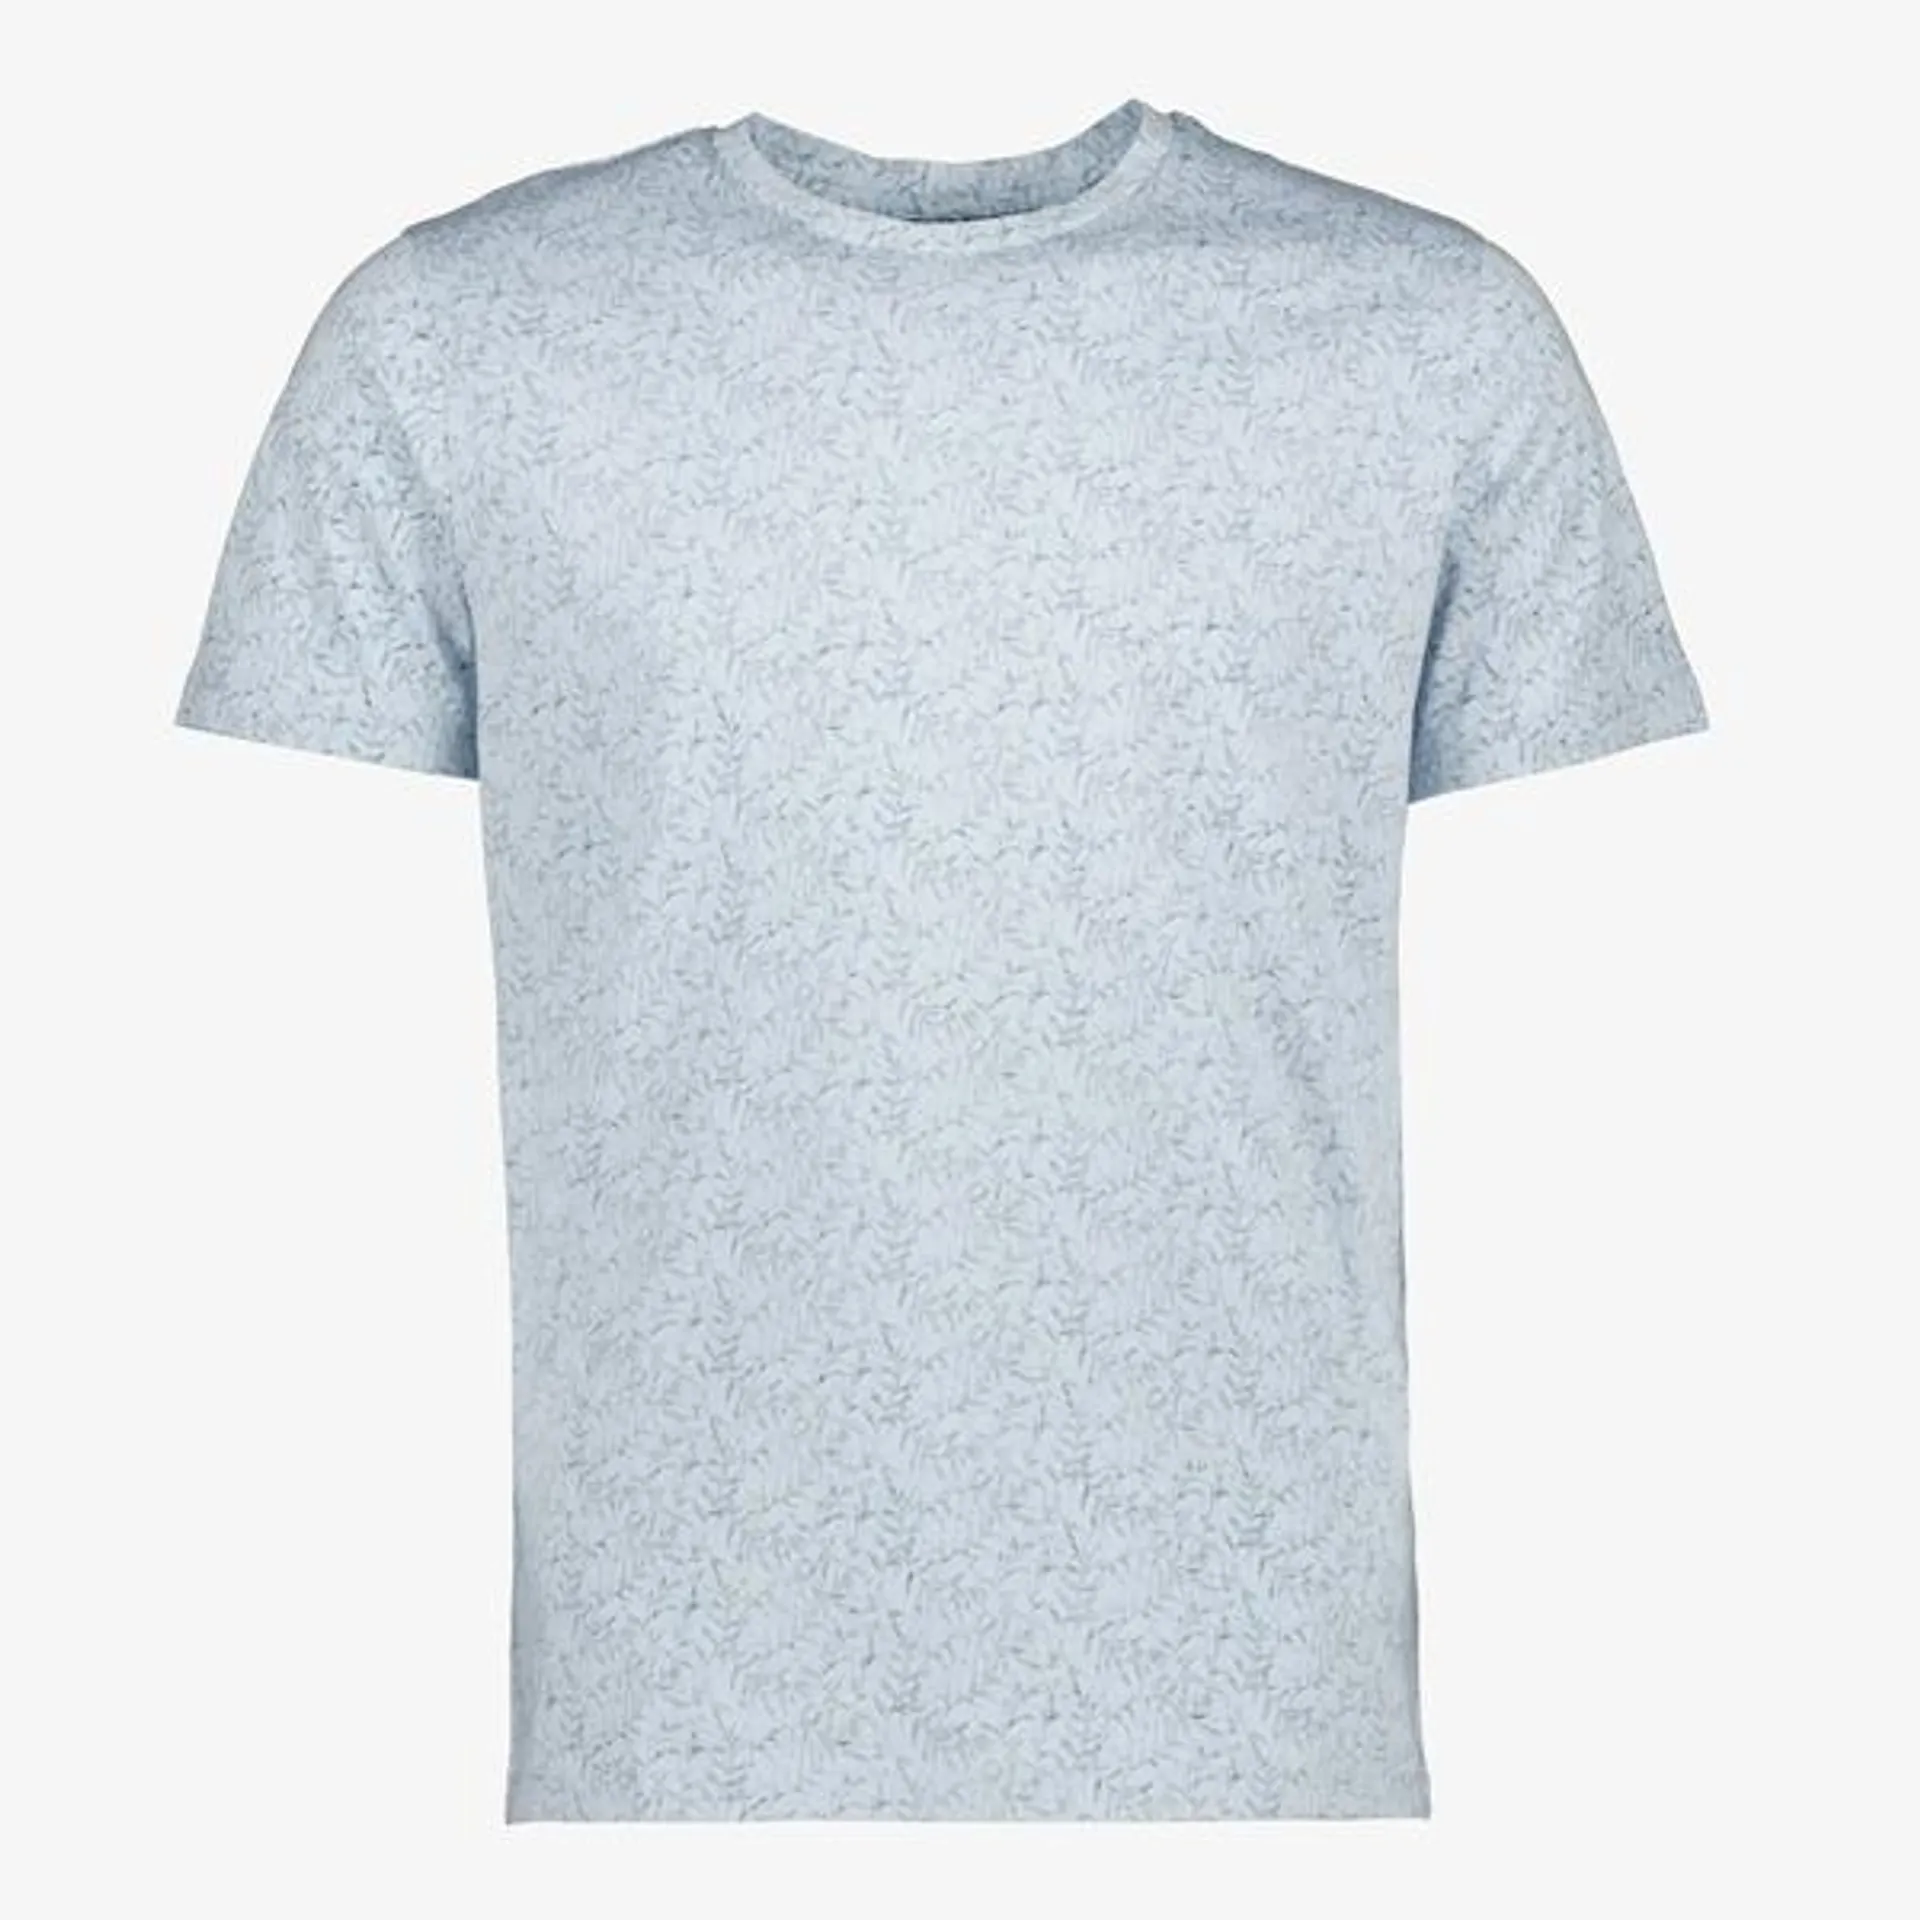 Lichtblauw T-shirt voor heren van Produkt. Dit T-shirt is lichtblauw van kl...